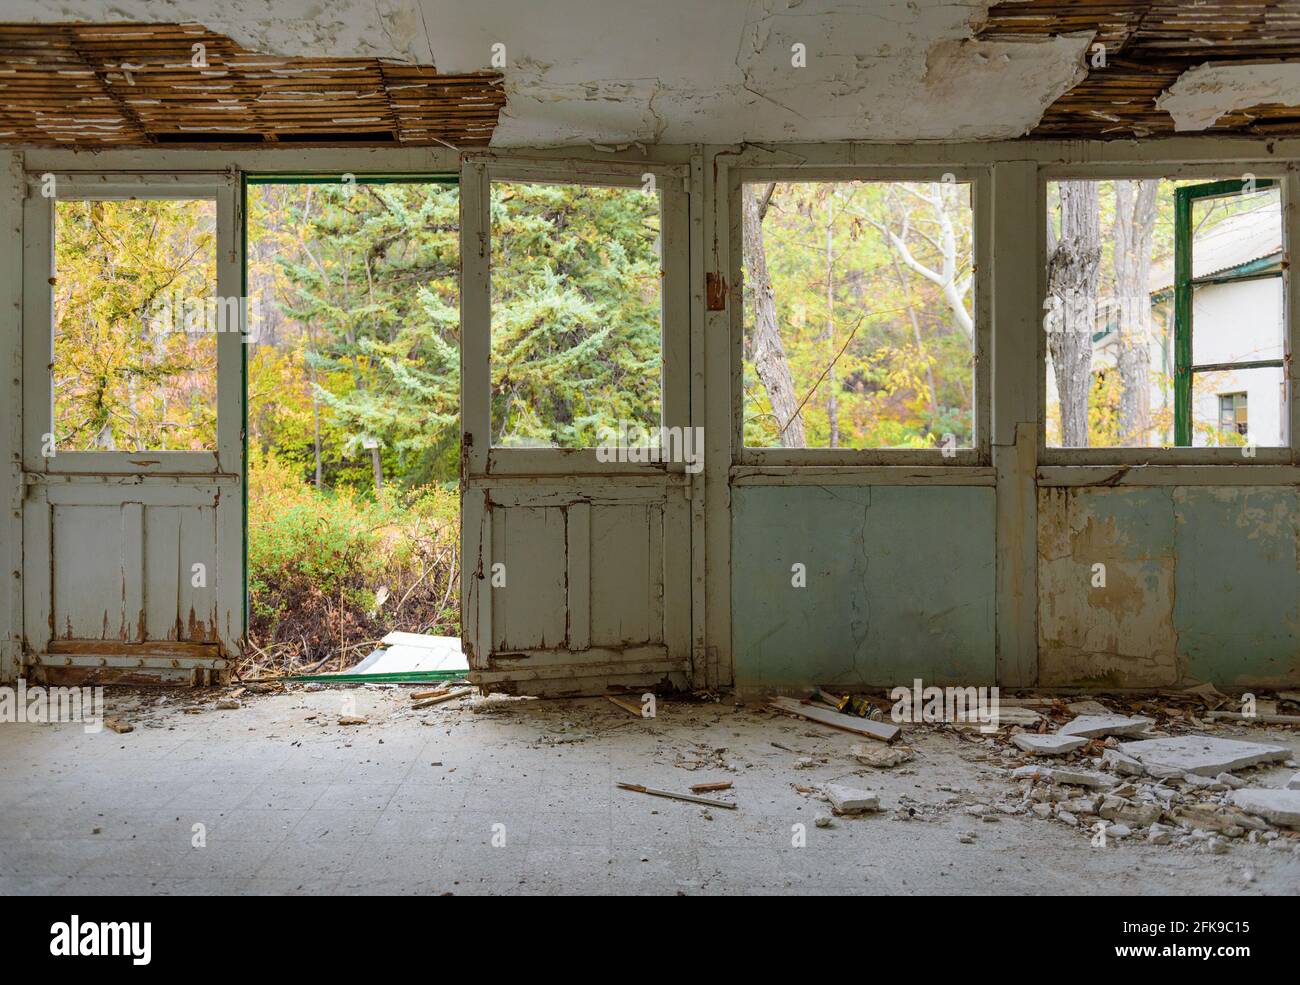 Casa abbandonata interno. Galleria con serramenti, vetri rotti e intonaco caduto, giardino d'autunno sopravorto visto attraverso le finestre Foto Stock